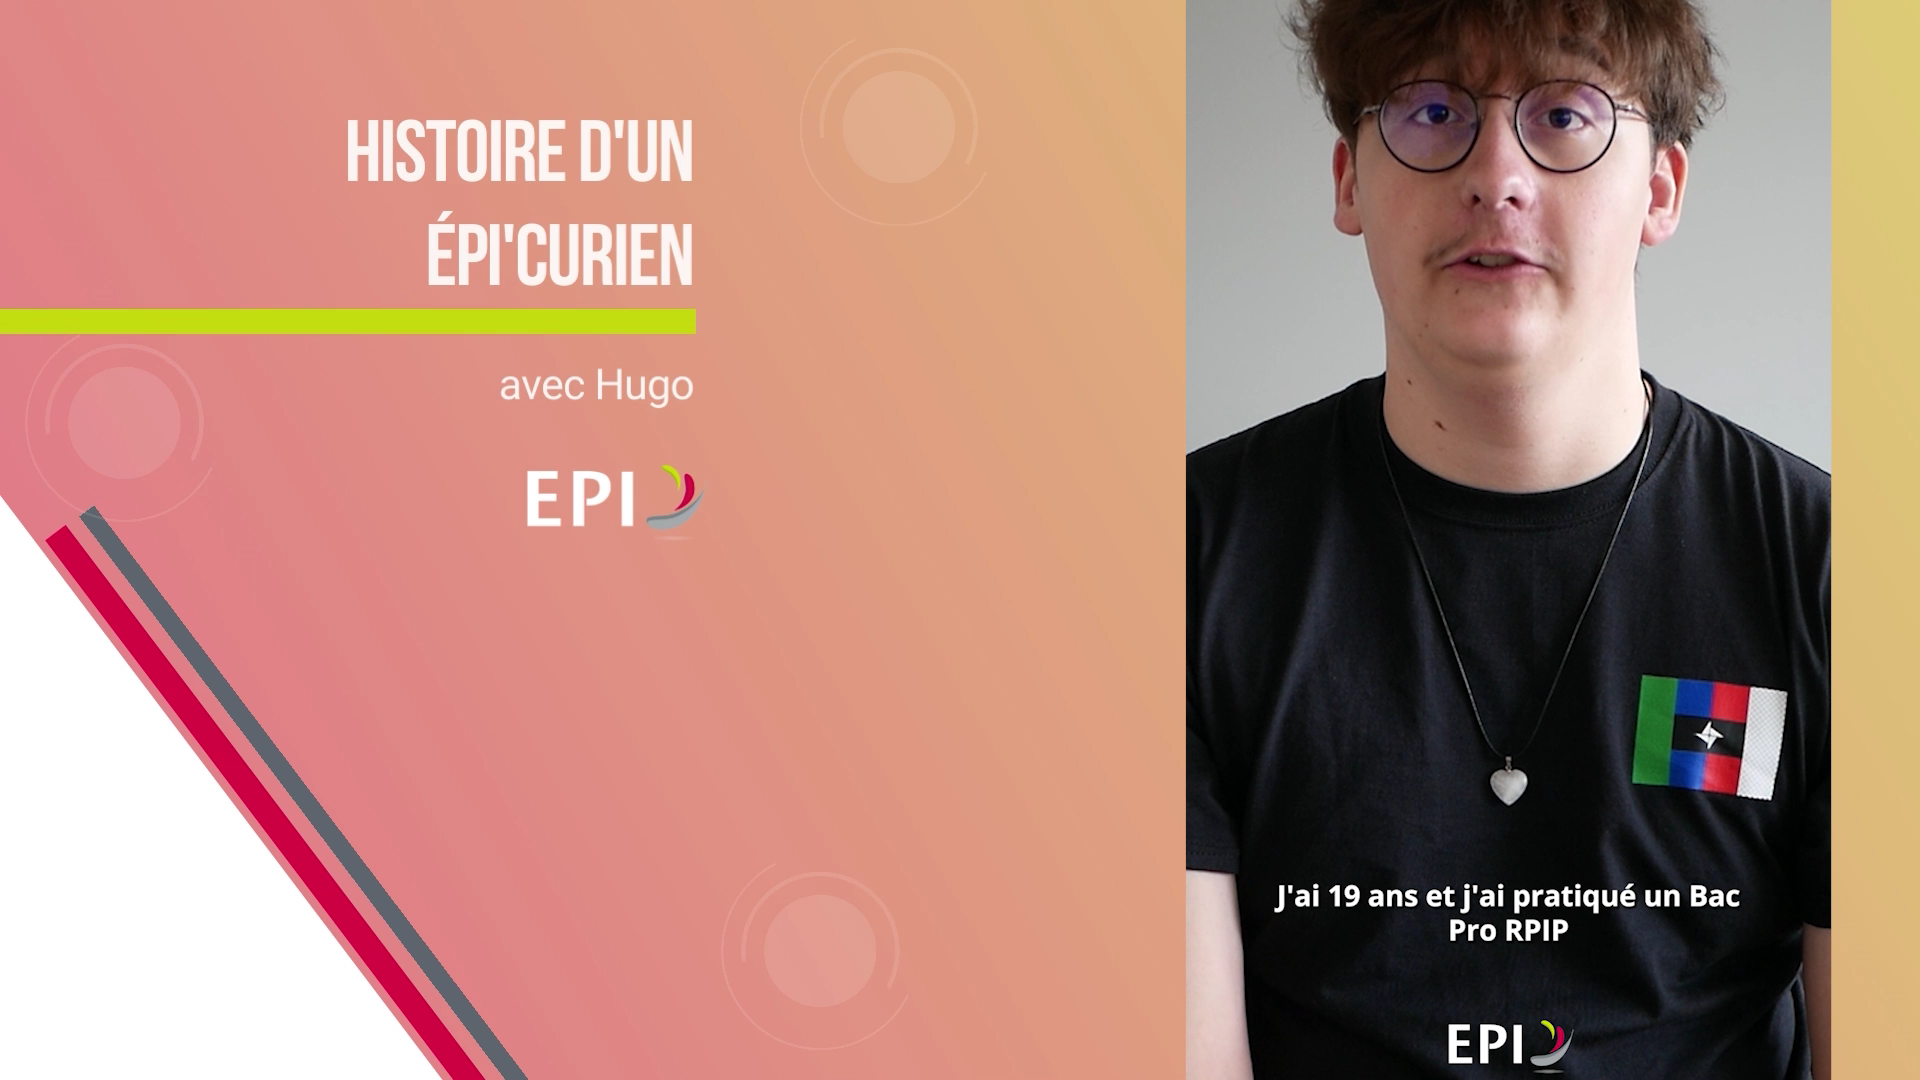 You are currently viewing Histoire d’un EPIcurien : épisode 3